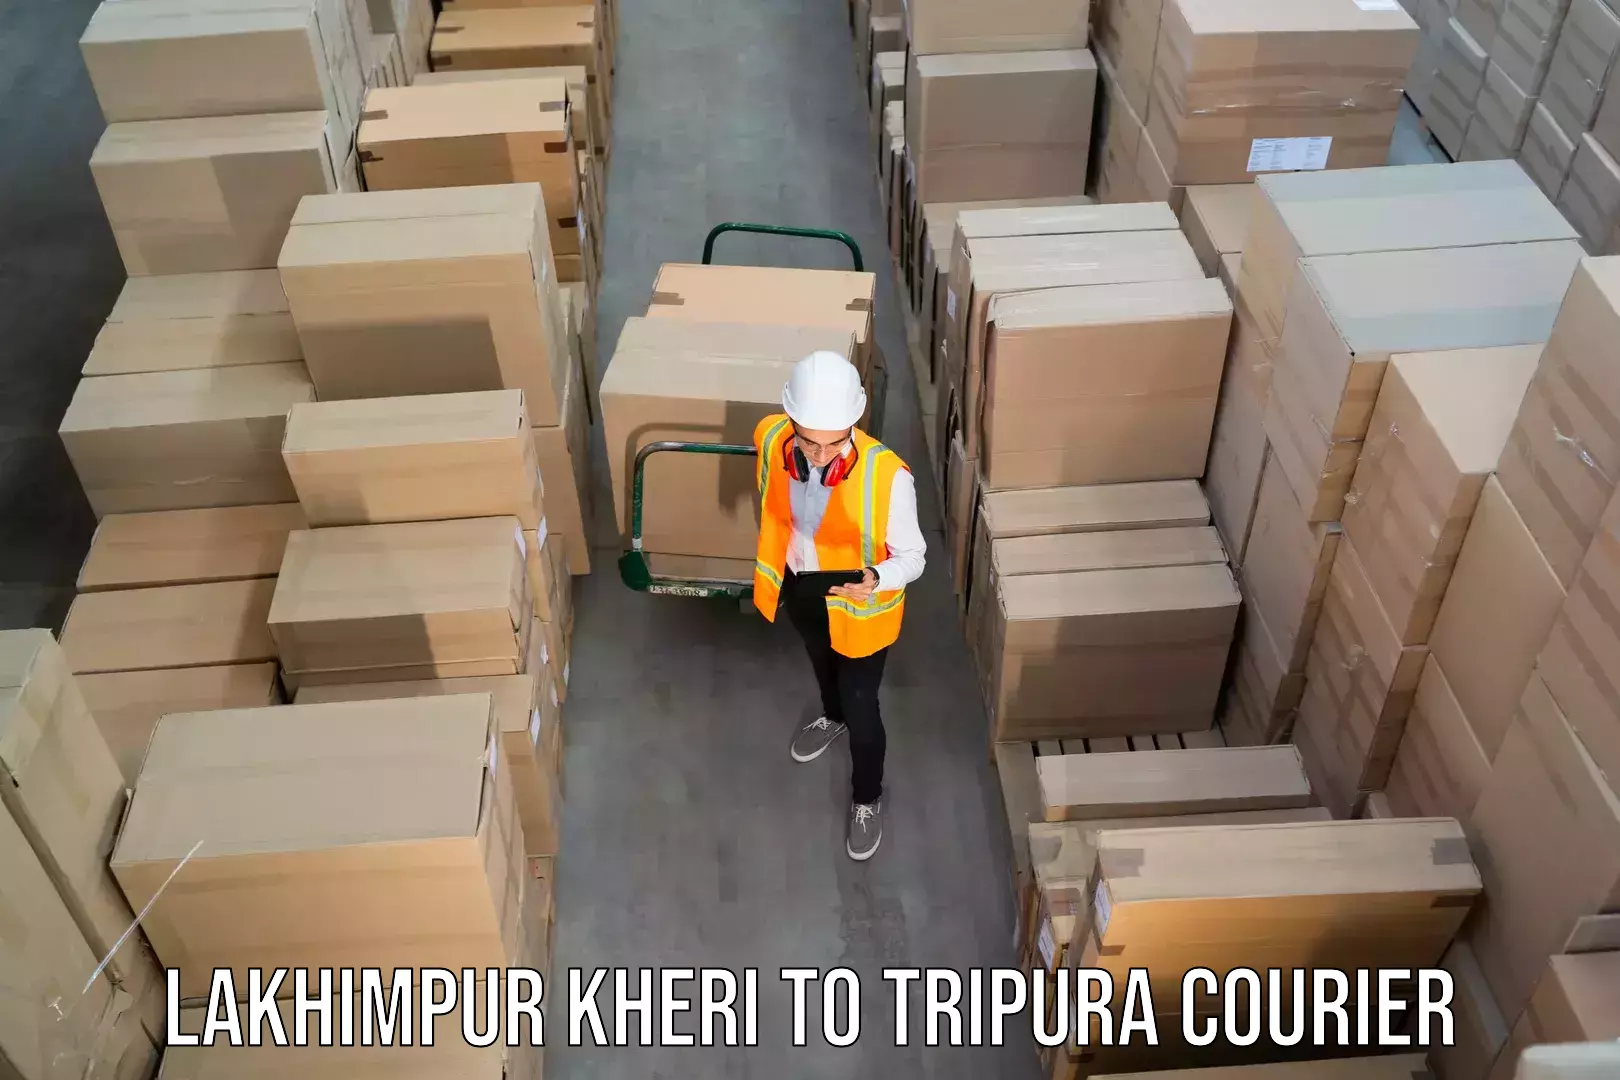 Multi-national courier services Lakhimpur Kheri to Bishalgarh